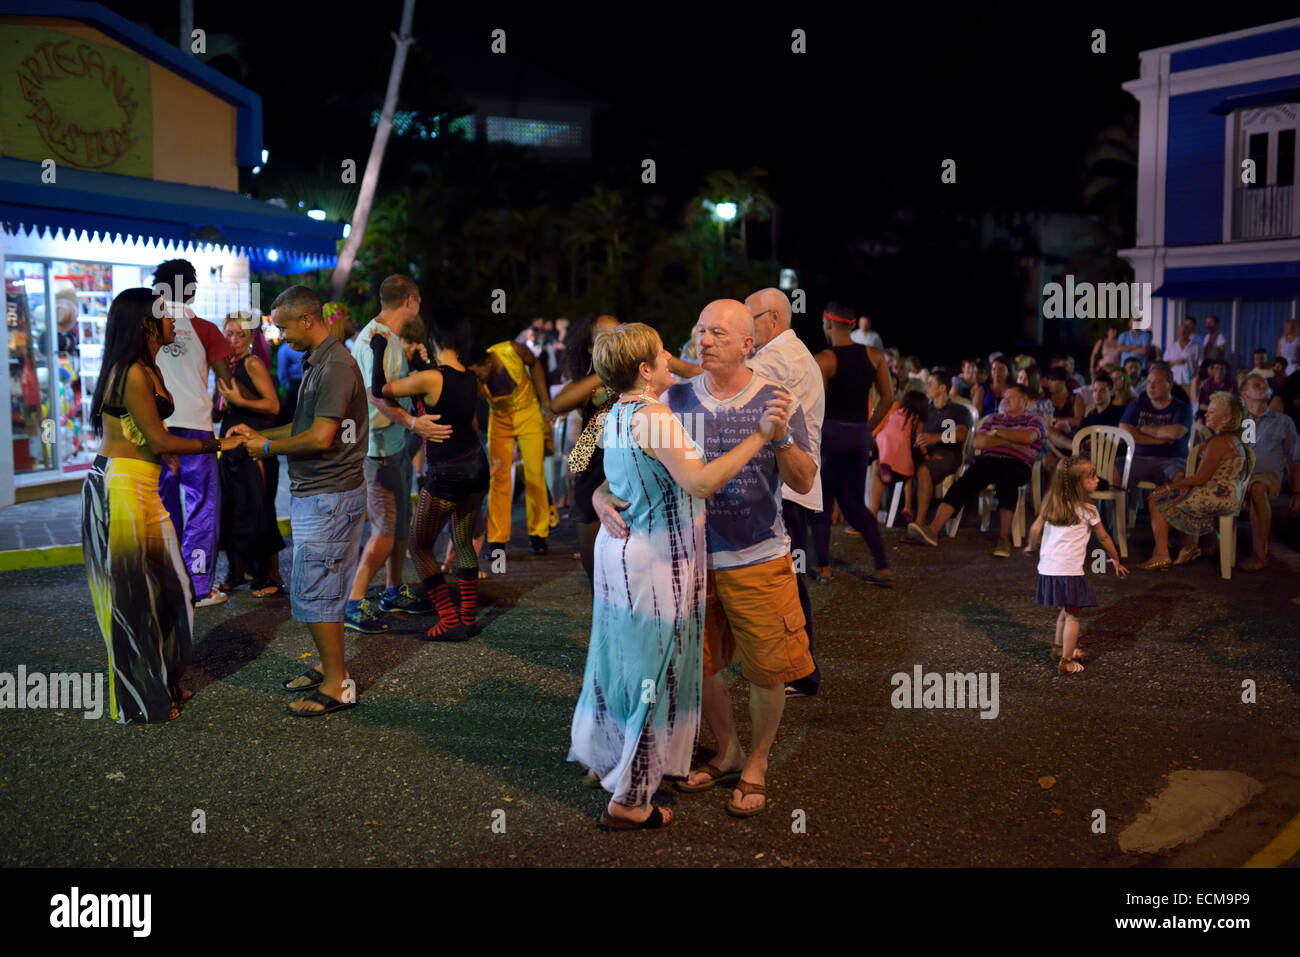 Les couples danser le merengue à la musique à une fête de rue en plein air Resort Puerto Plata République Dominicaine Banque D'Images